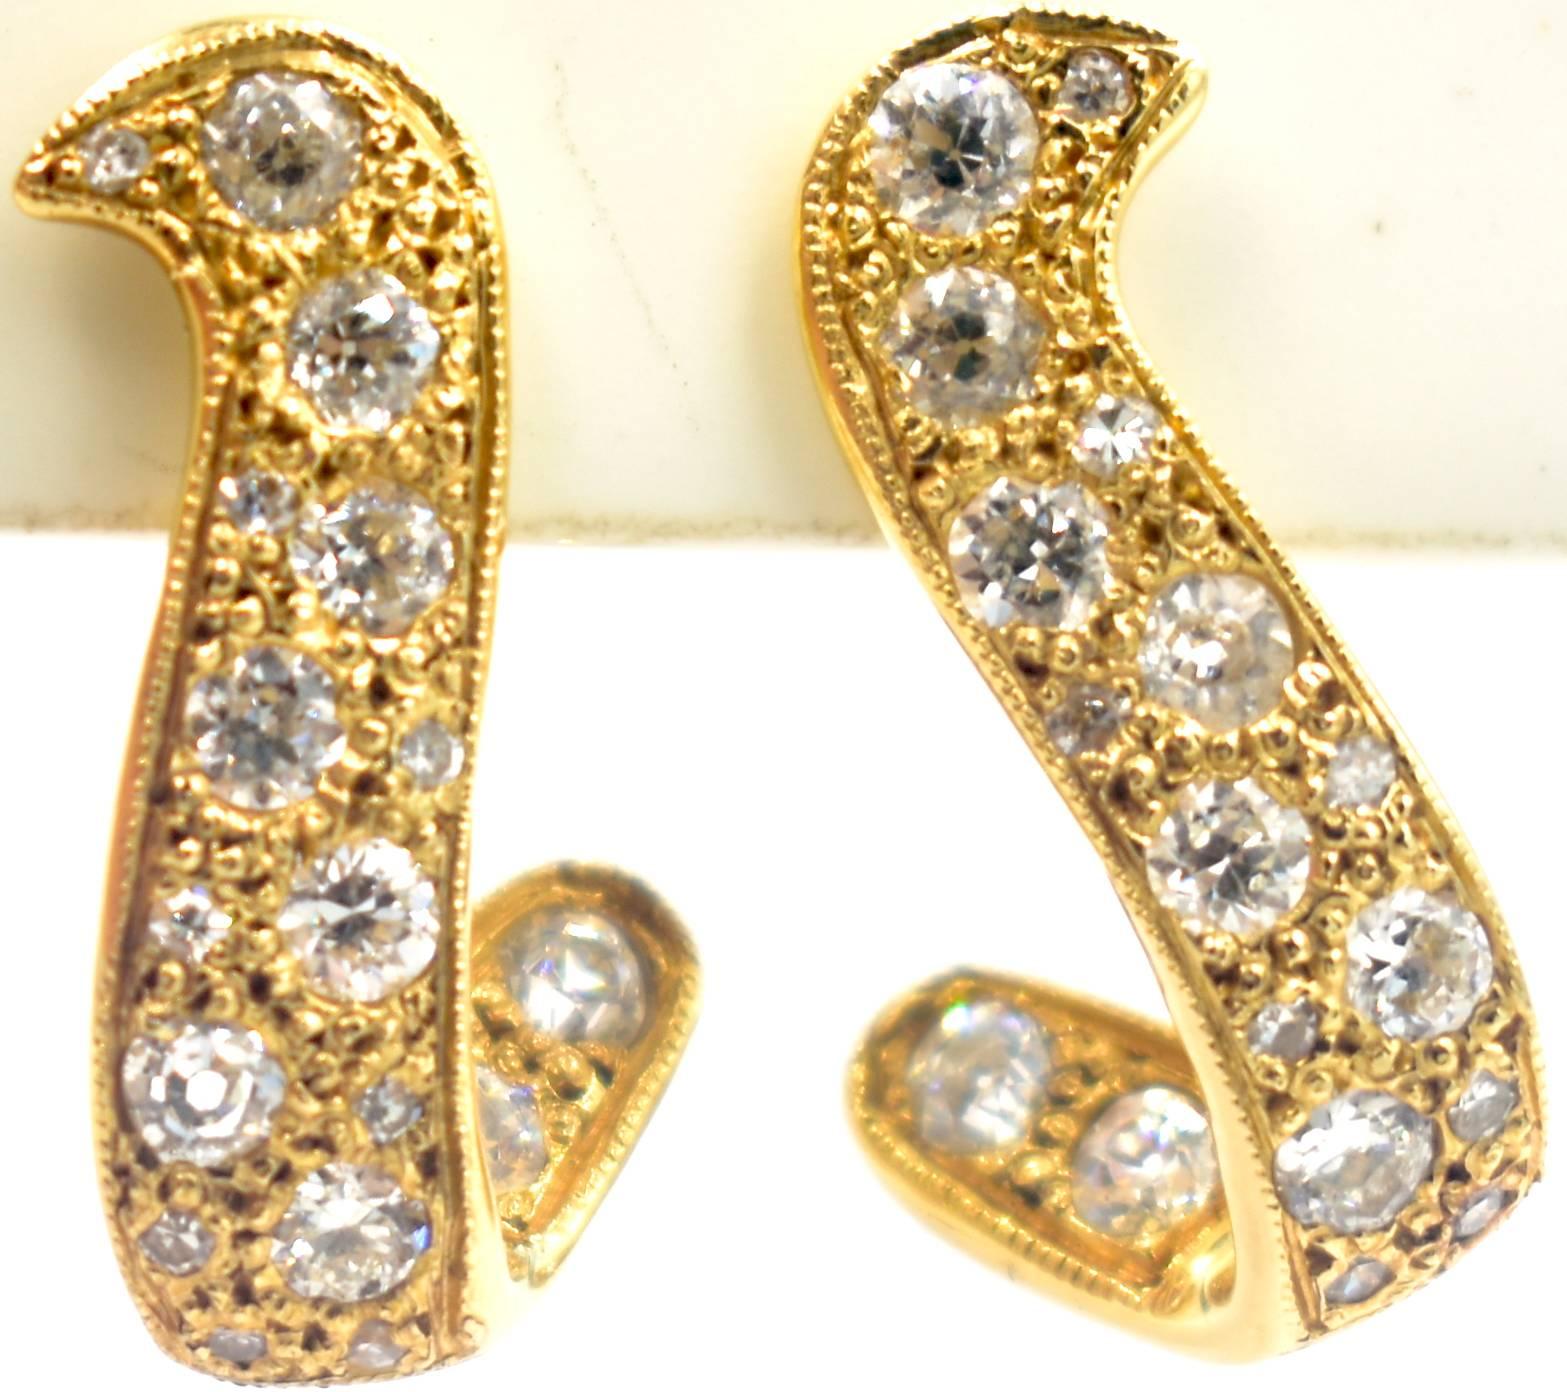 Entzückendes Paar Ohrringe aus 14 Karat Gold und Diamanten in einer sanft geschwungenen Form mit Schraubverschluss. Die klaren, funkelnden Diamanten haben ein Gewicht von 1,25 Karat.
Aber das Gewicht ist nicht das Entscheidende.  Es ist die